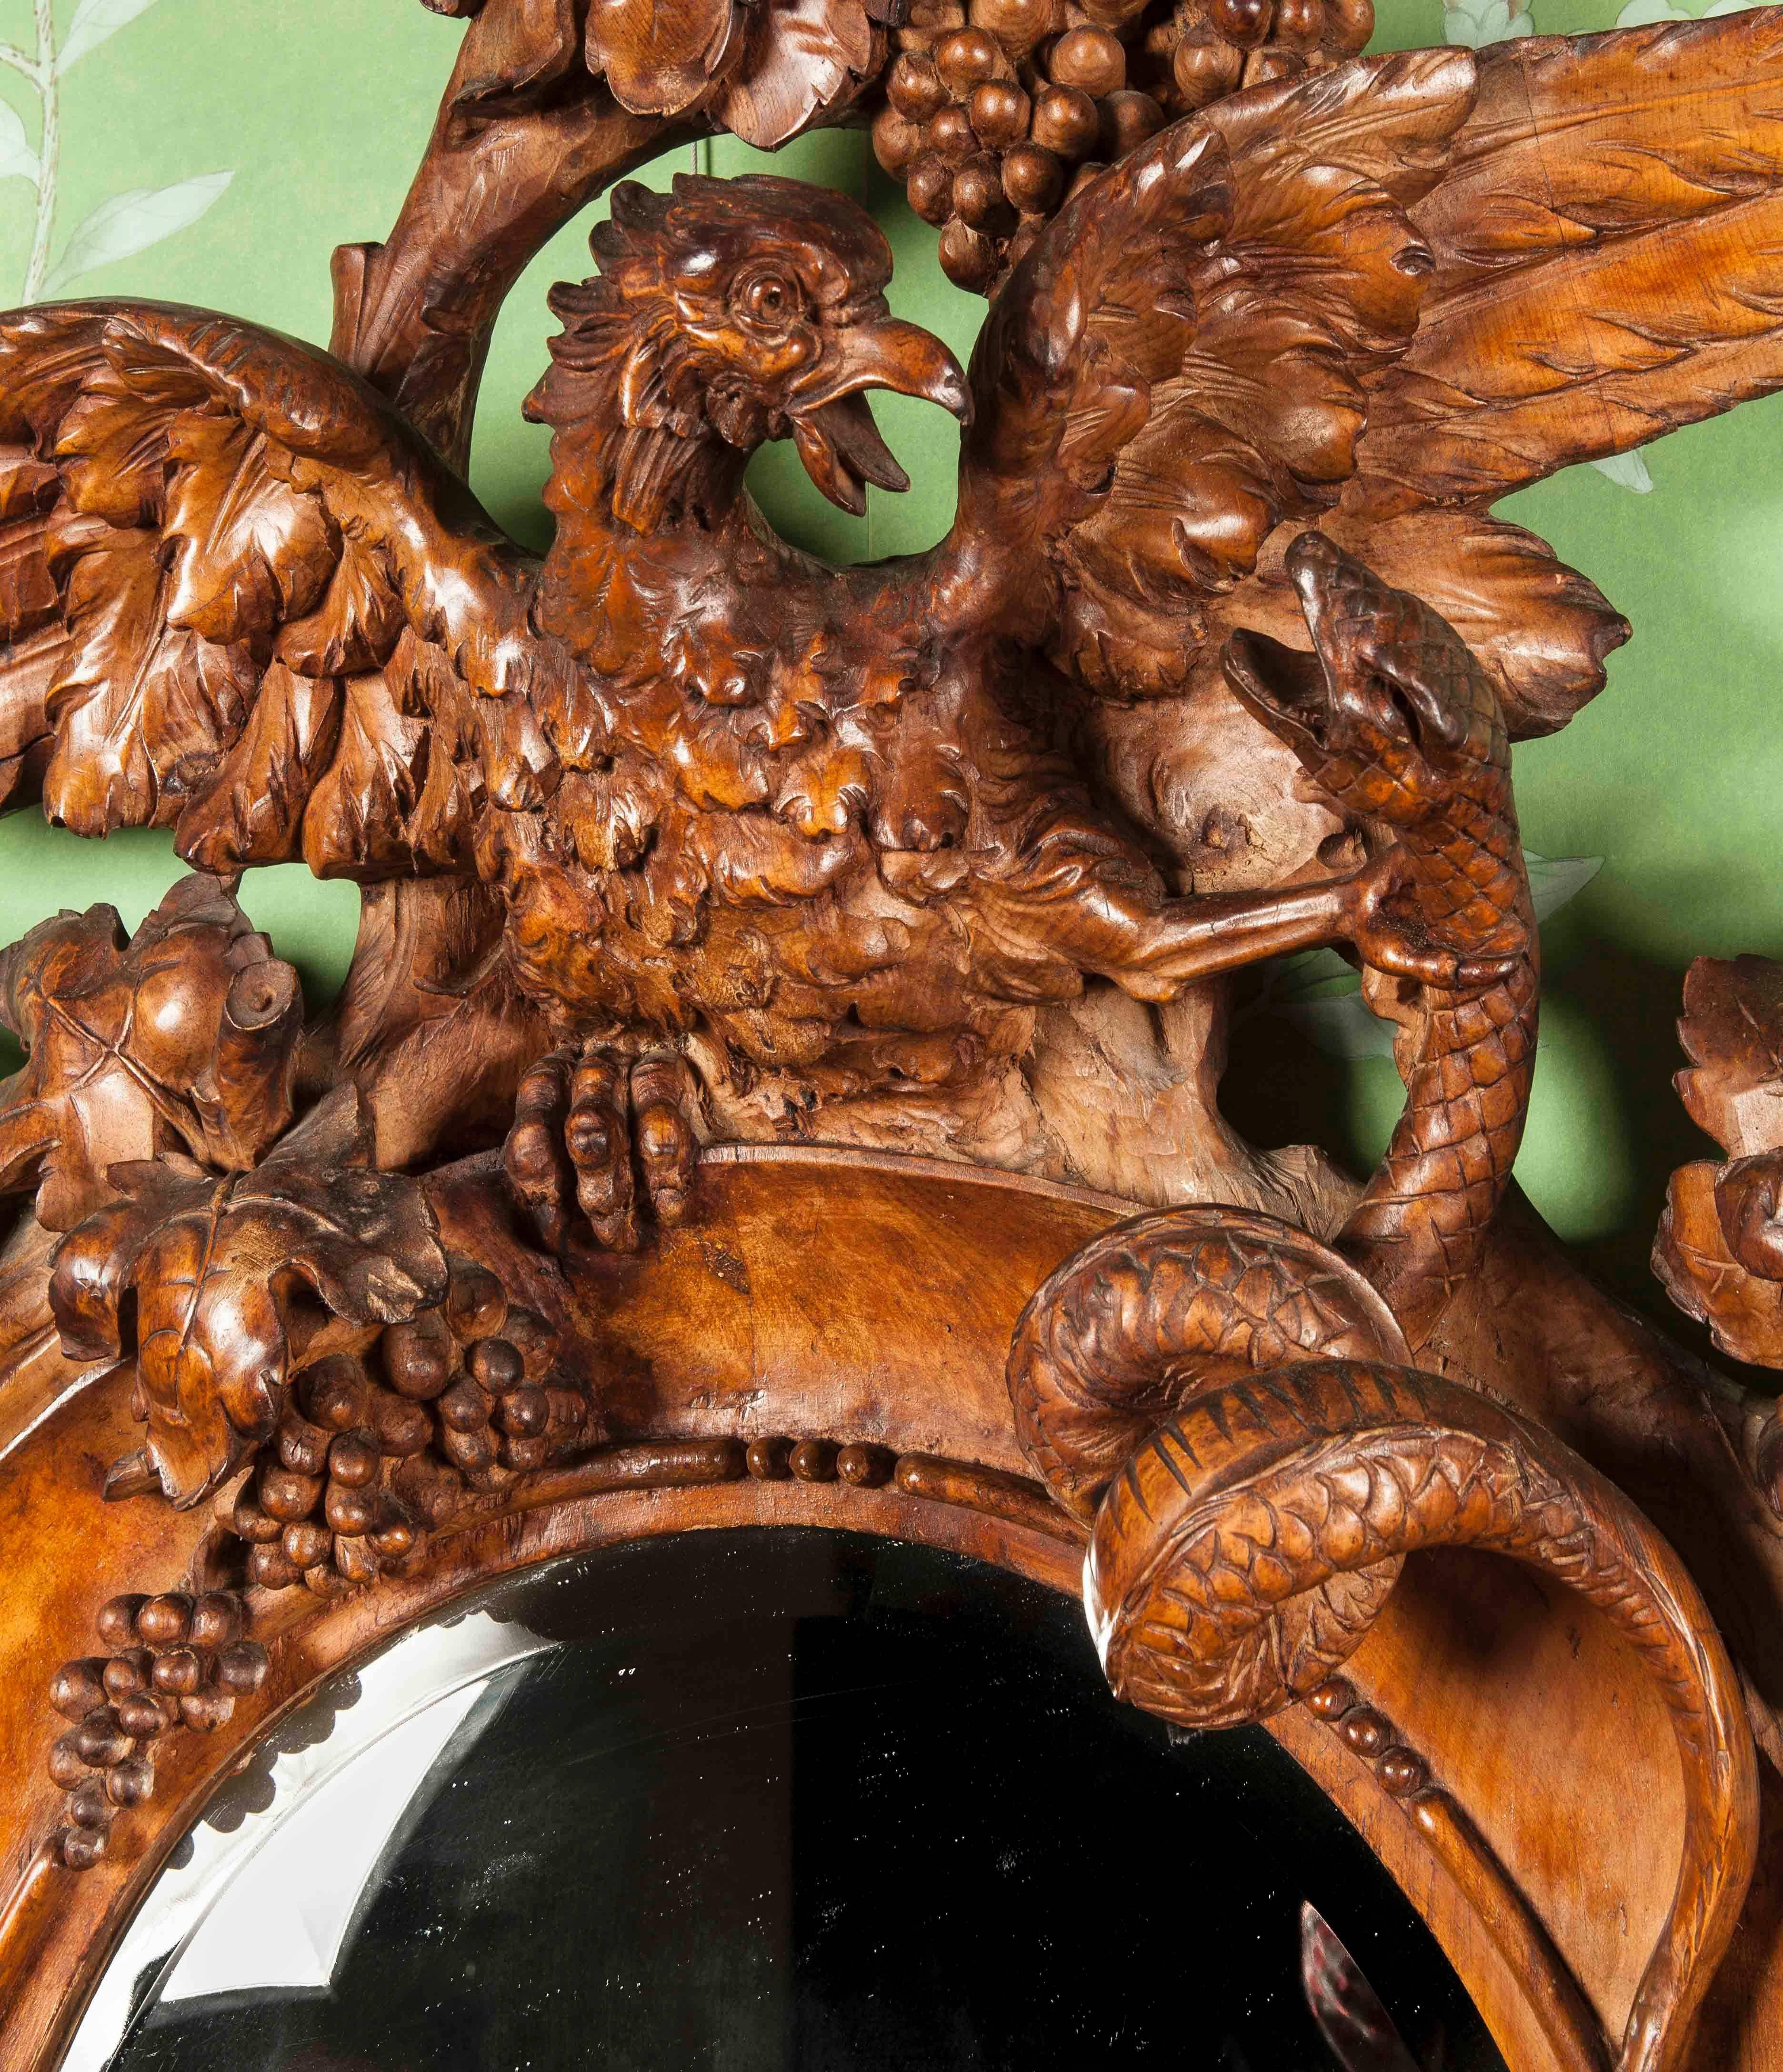 Konstruiert in Nussbaum, reich und fein geschnitzt, erhebt sich von einer serpentinenförmigen Basis, die von geformten und gerollten Füßen getragen wird, mit einem gespreizten Flügel Adler, mit einer Kralle in der Höhe, hält eine schildförmige